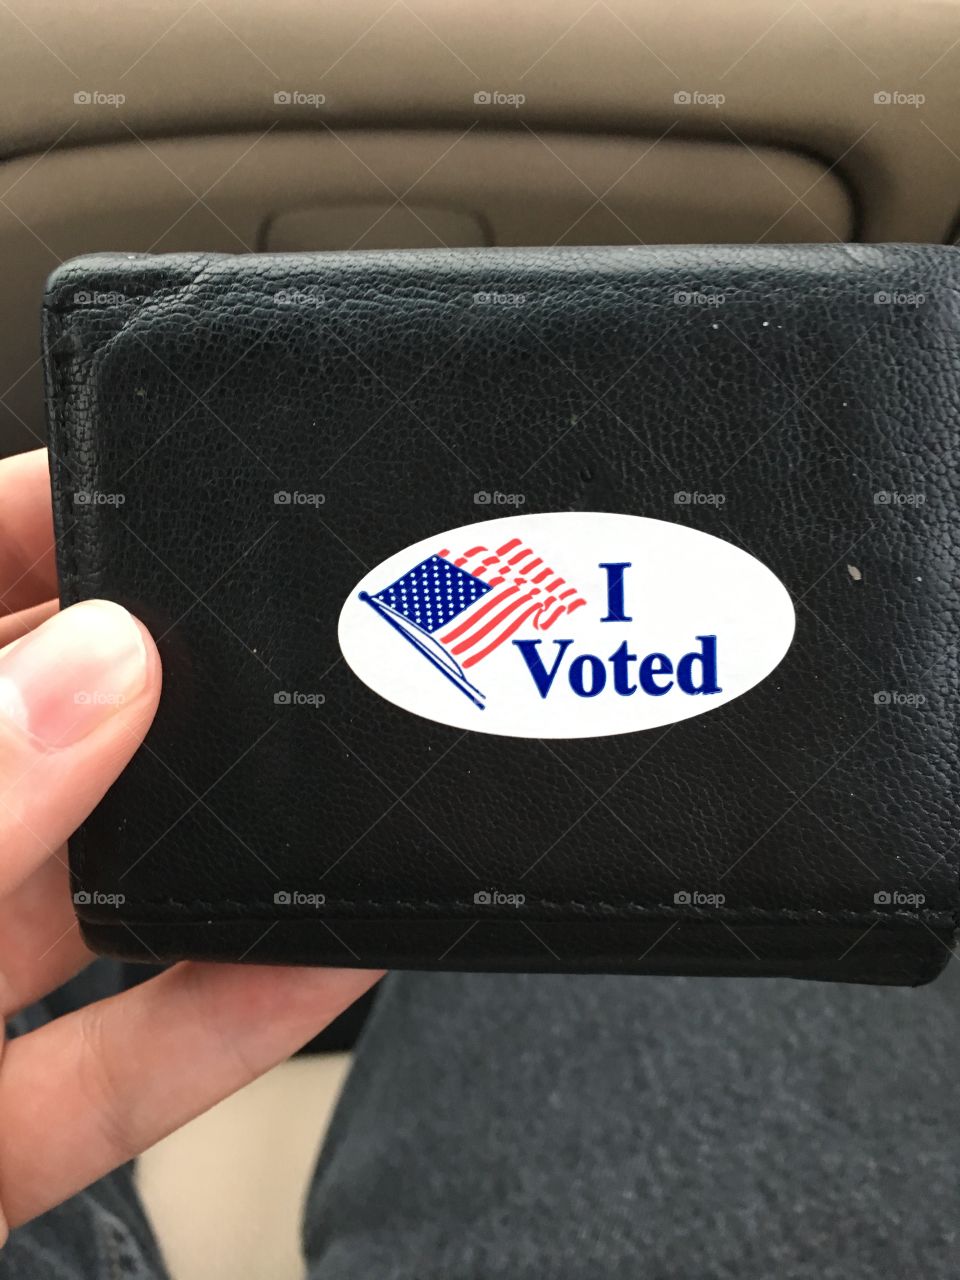 I voted.